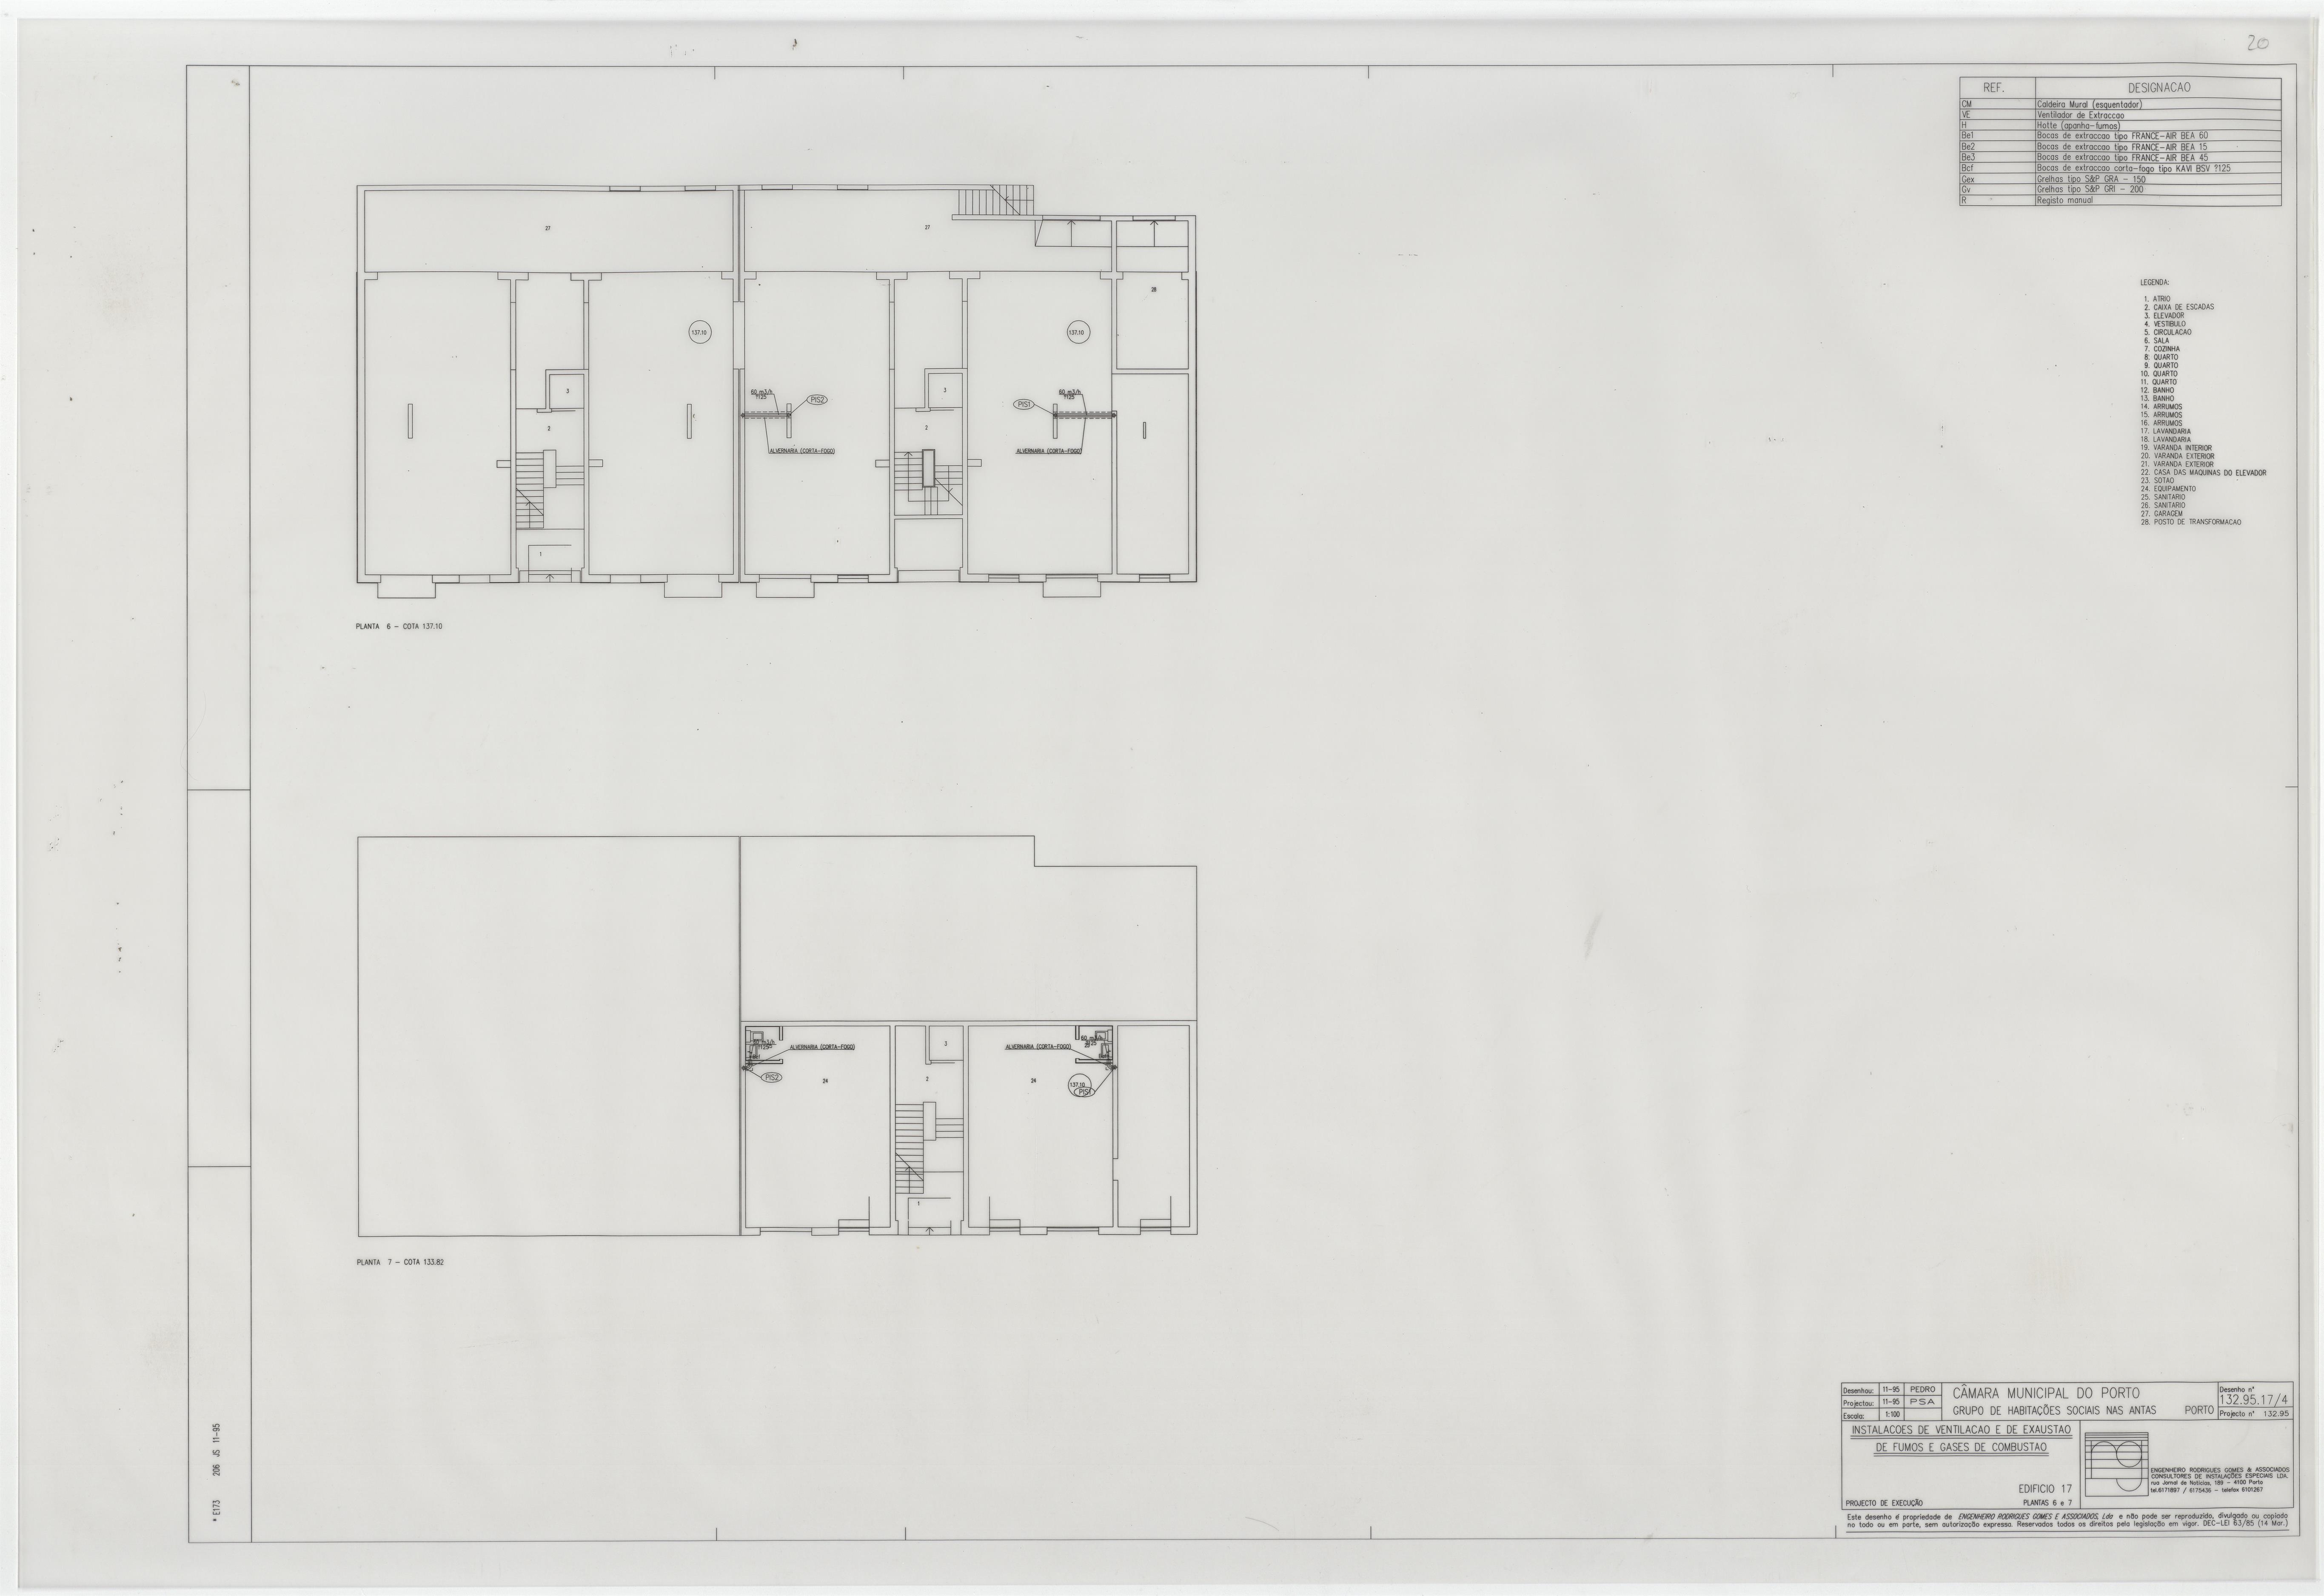 Grupo de habitações sociais nas Antas : sistema AVAC : ventilação / exaustão : edifício 17